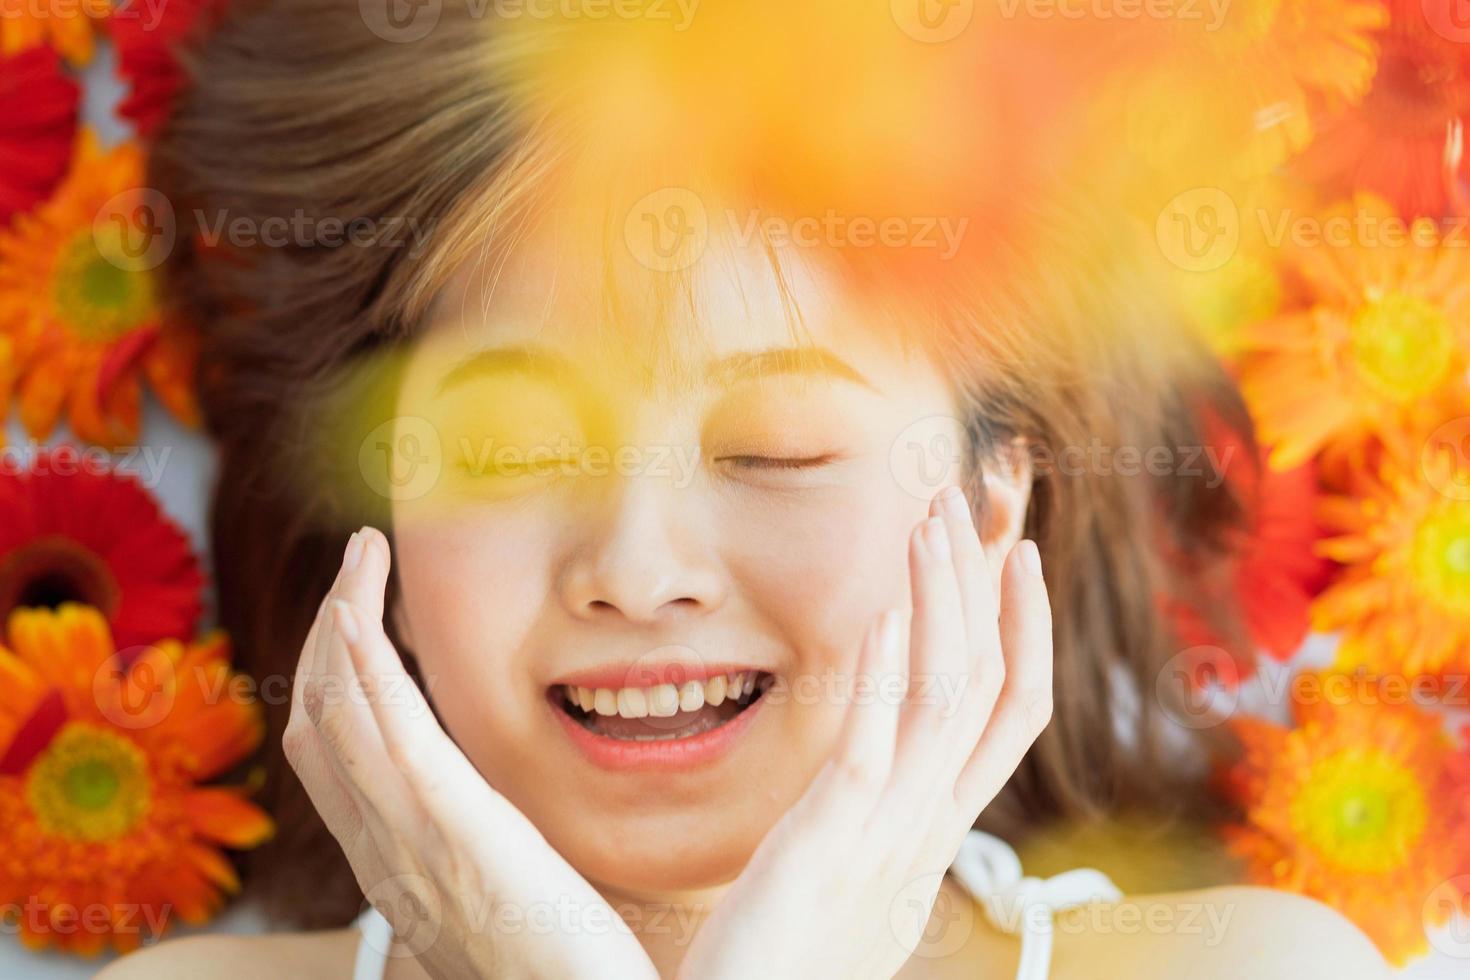 jeune fille allongée sur une fleur avec une expression heureuse photo